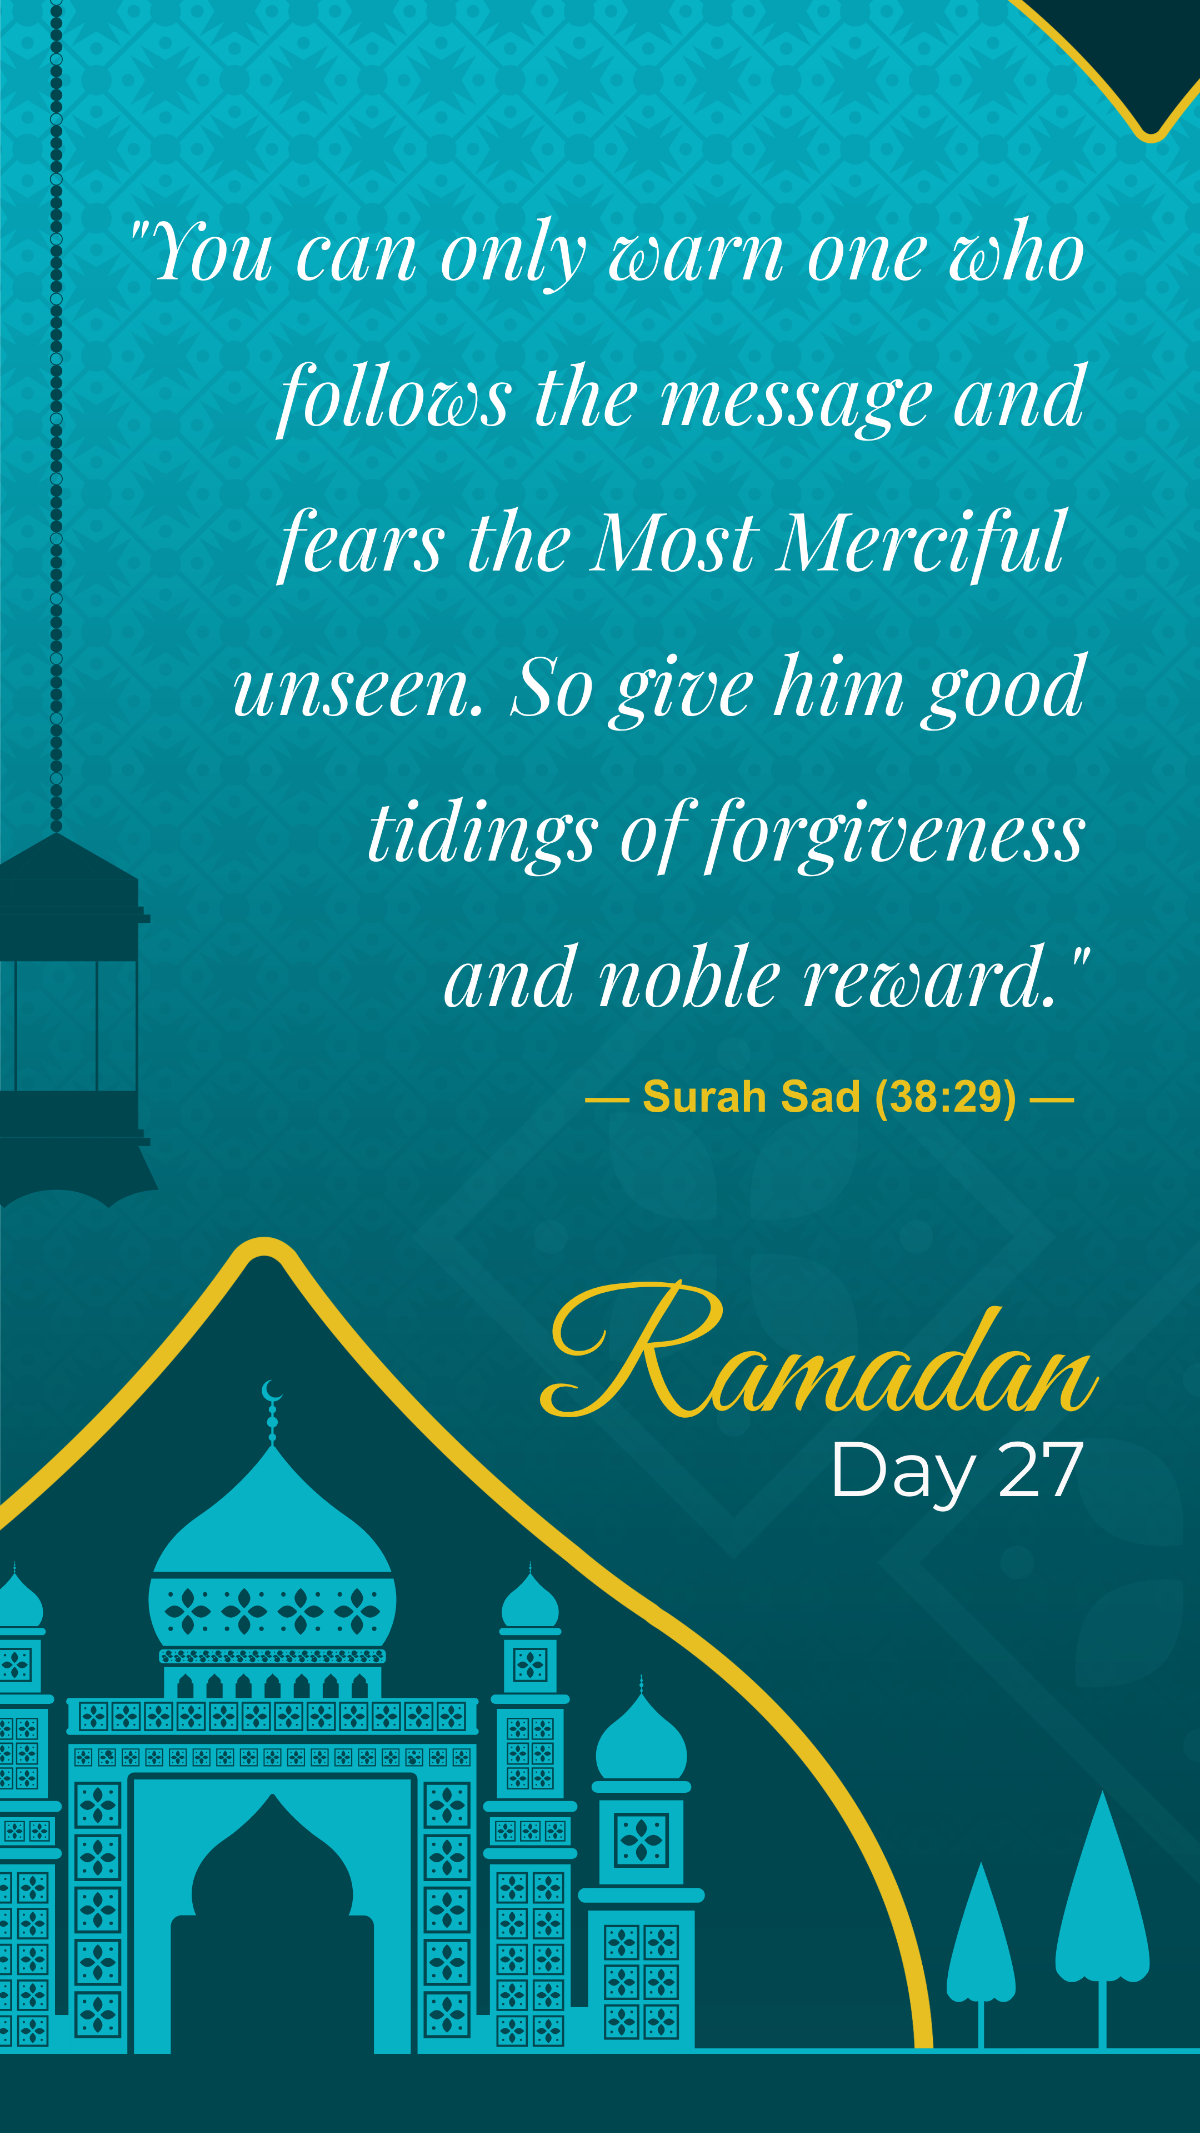 Ramadan Day 27 Template